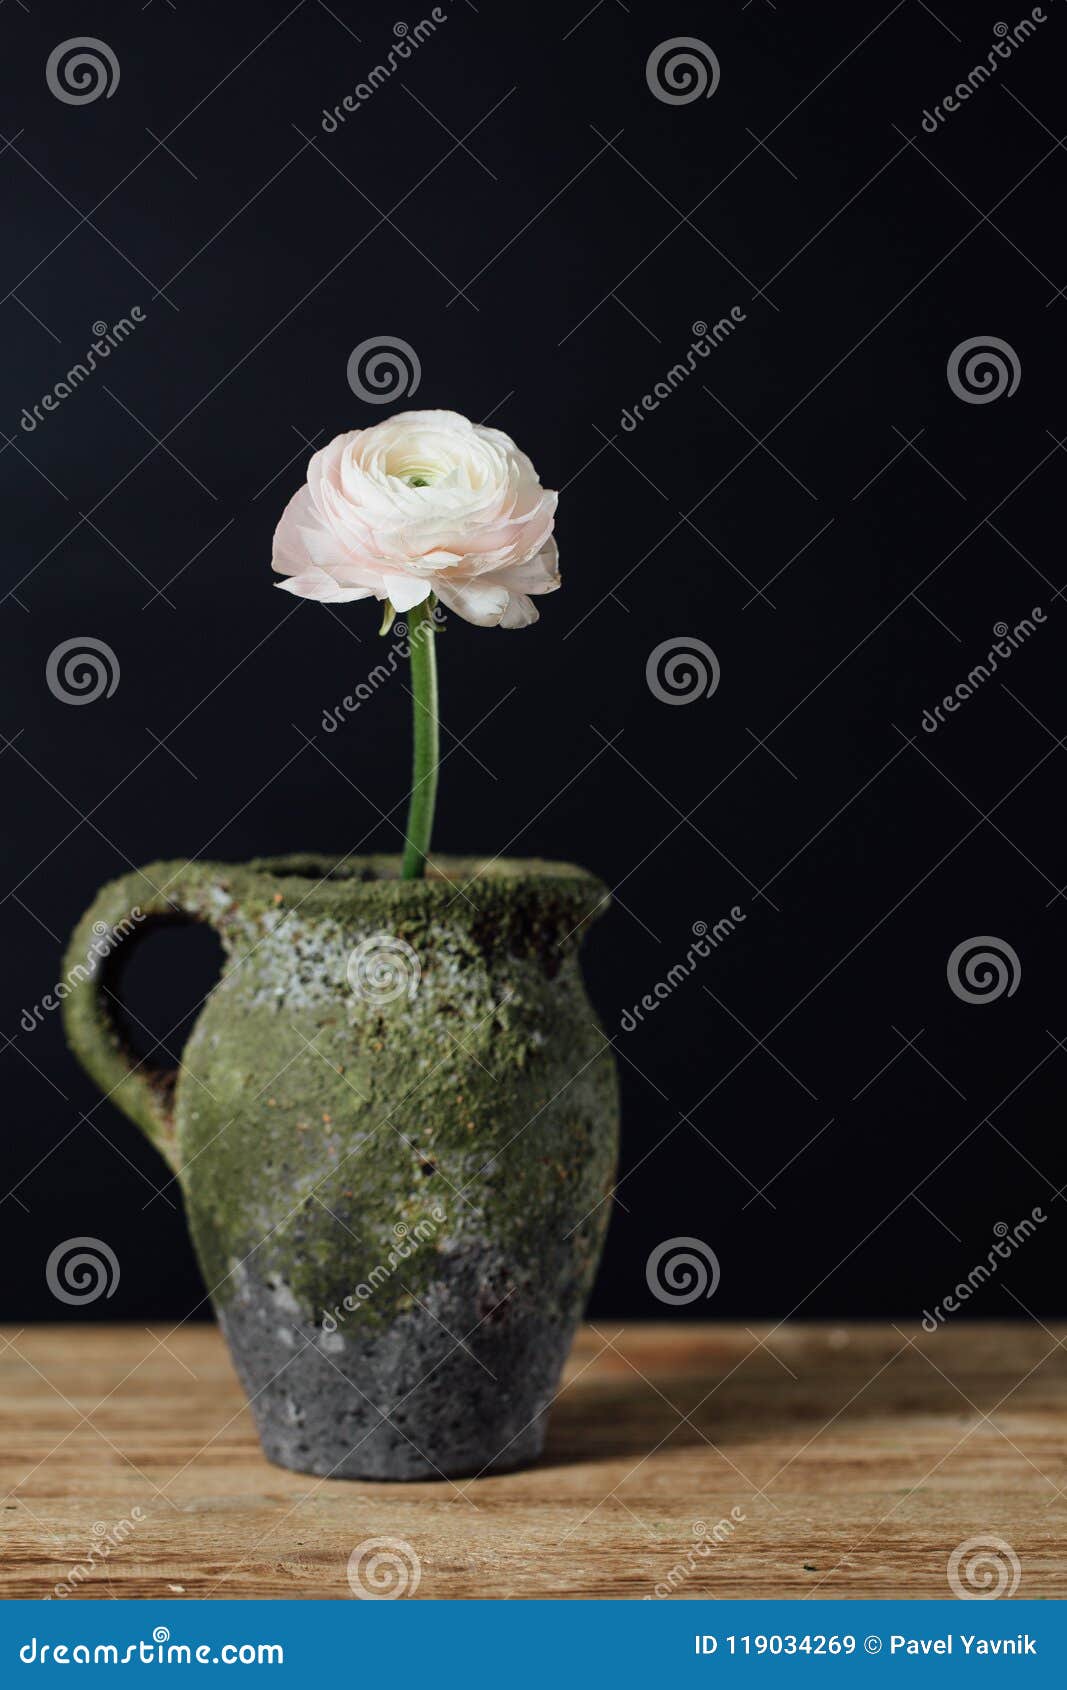 Fleur Rose Douce Simple De Renoncule Dans Un Vase à Vintage Sur Une Table  En Bois Image stock - Image du tableau, vacances: 119034269